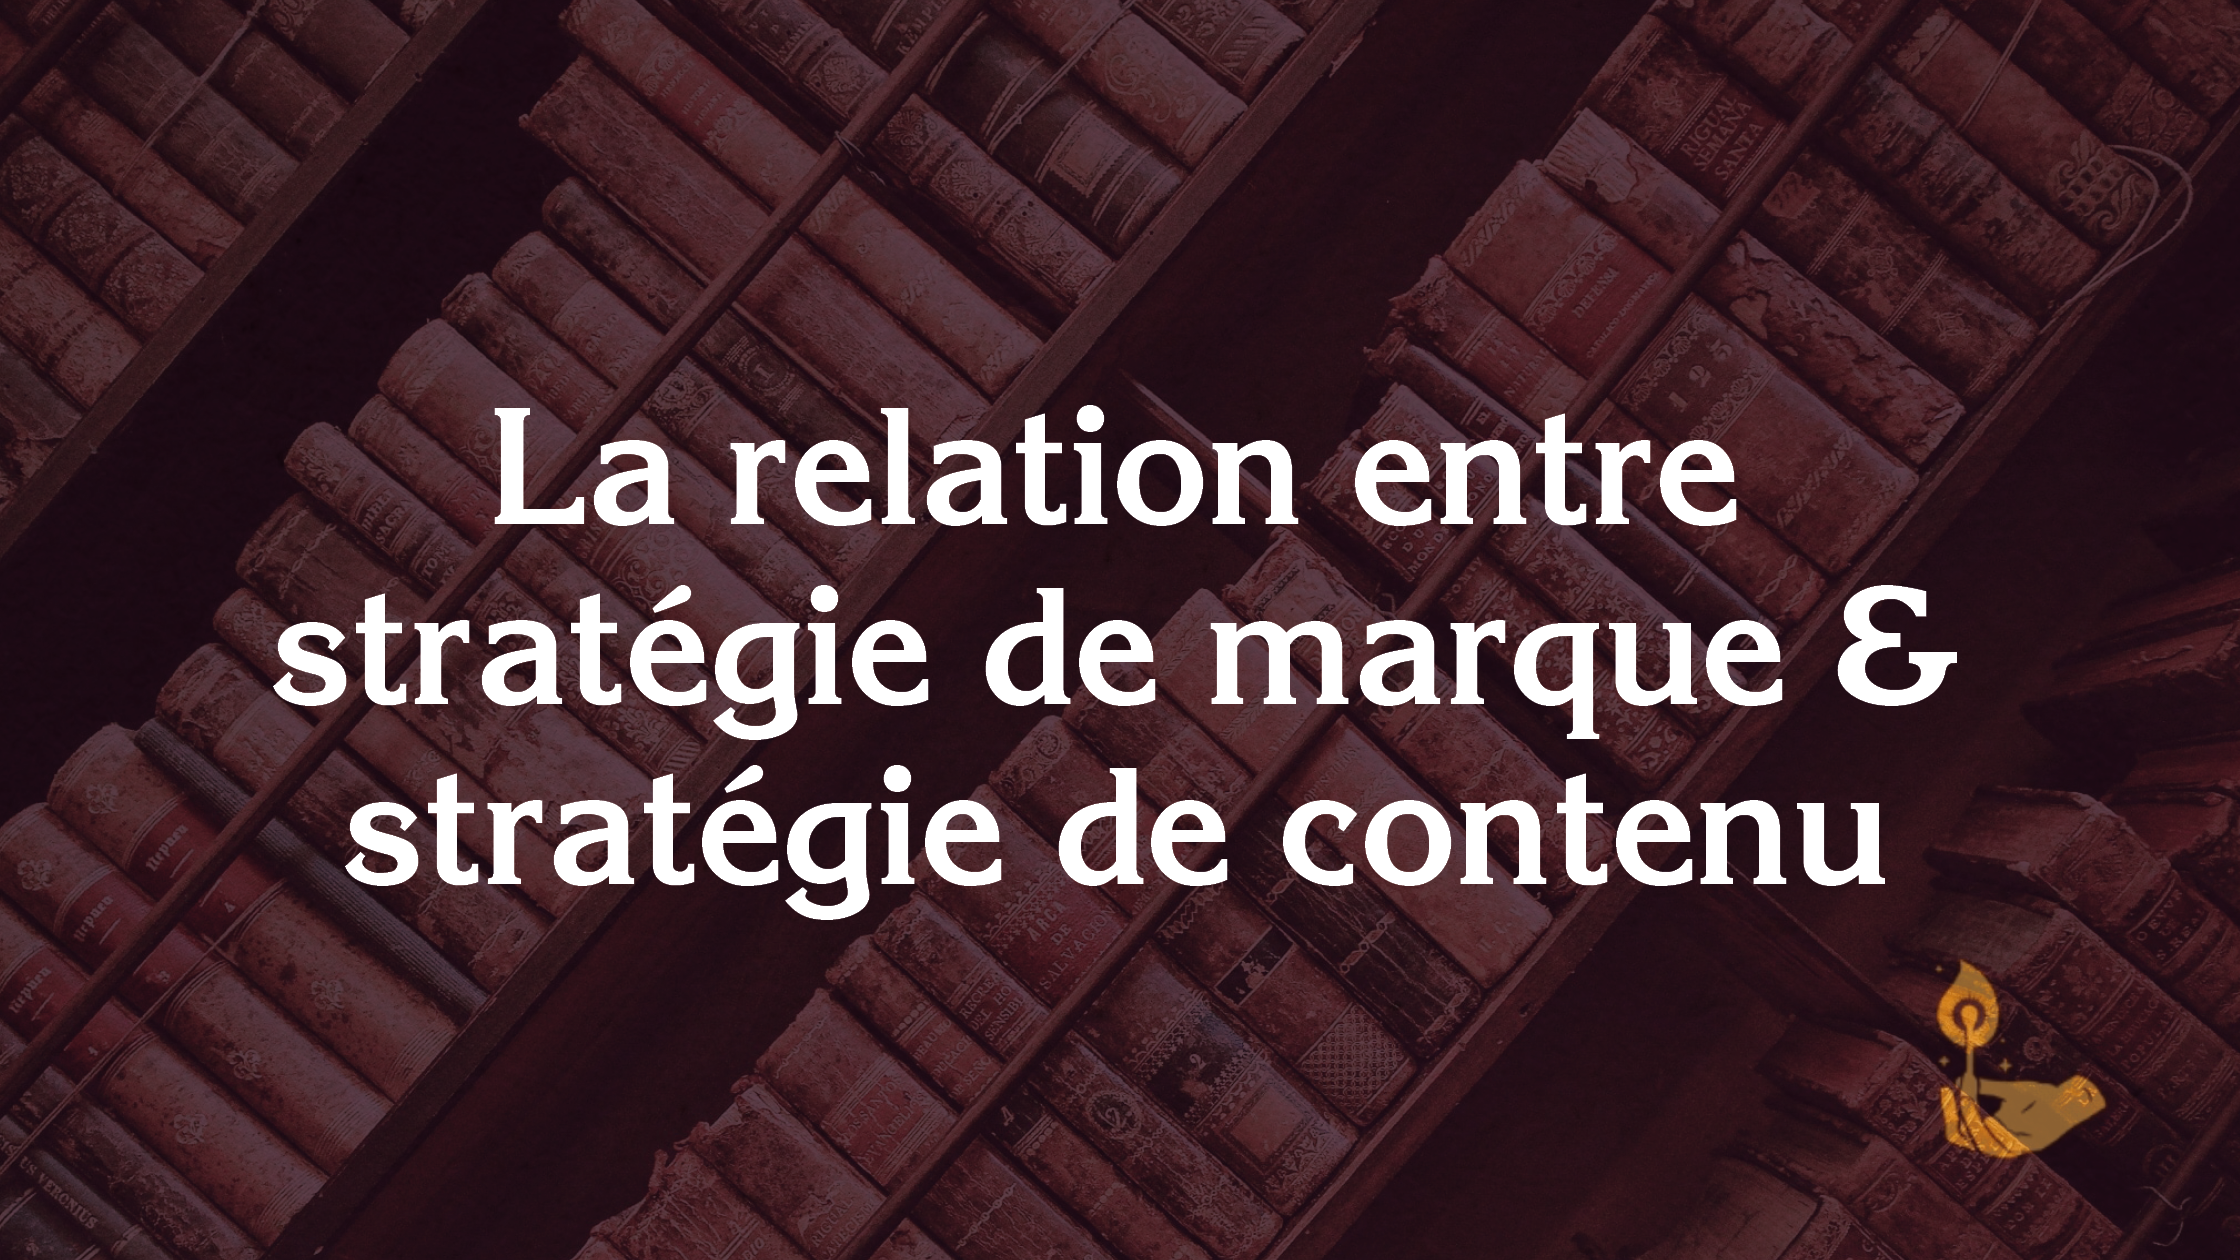 La relation entre stratégie de marque et stratégie de contenu